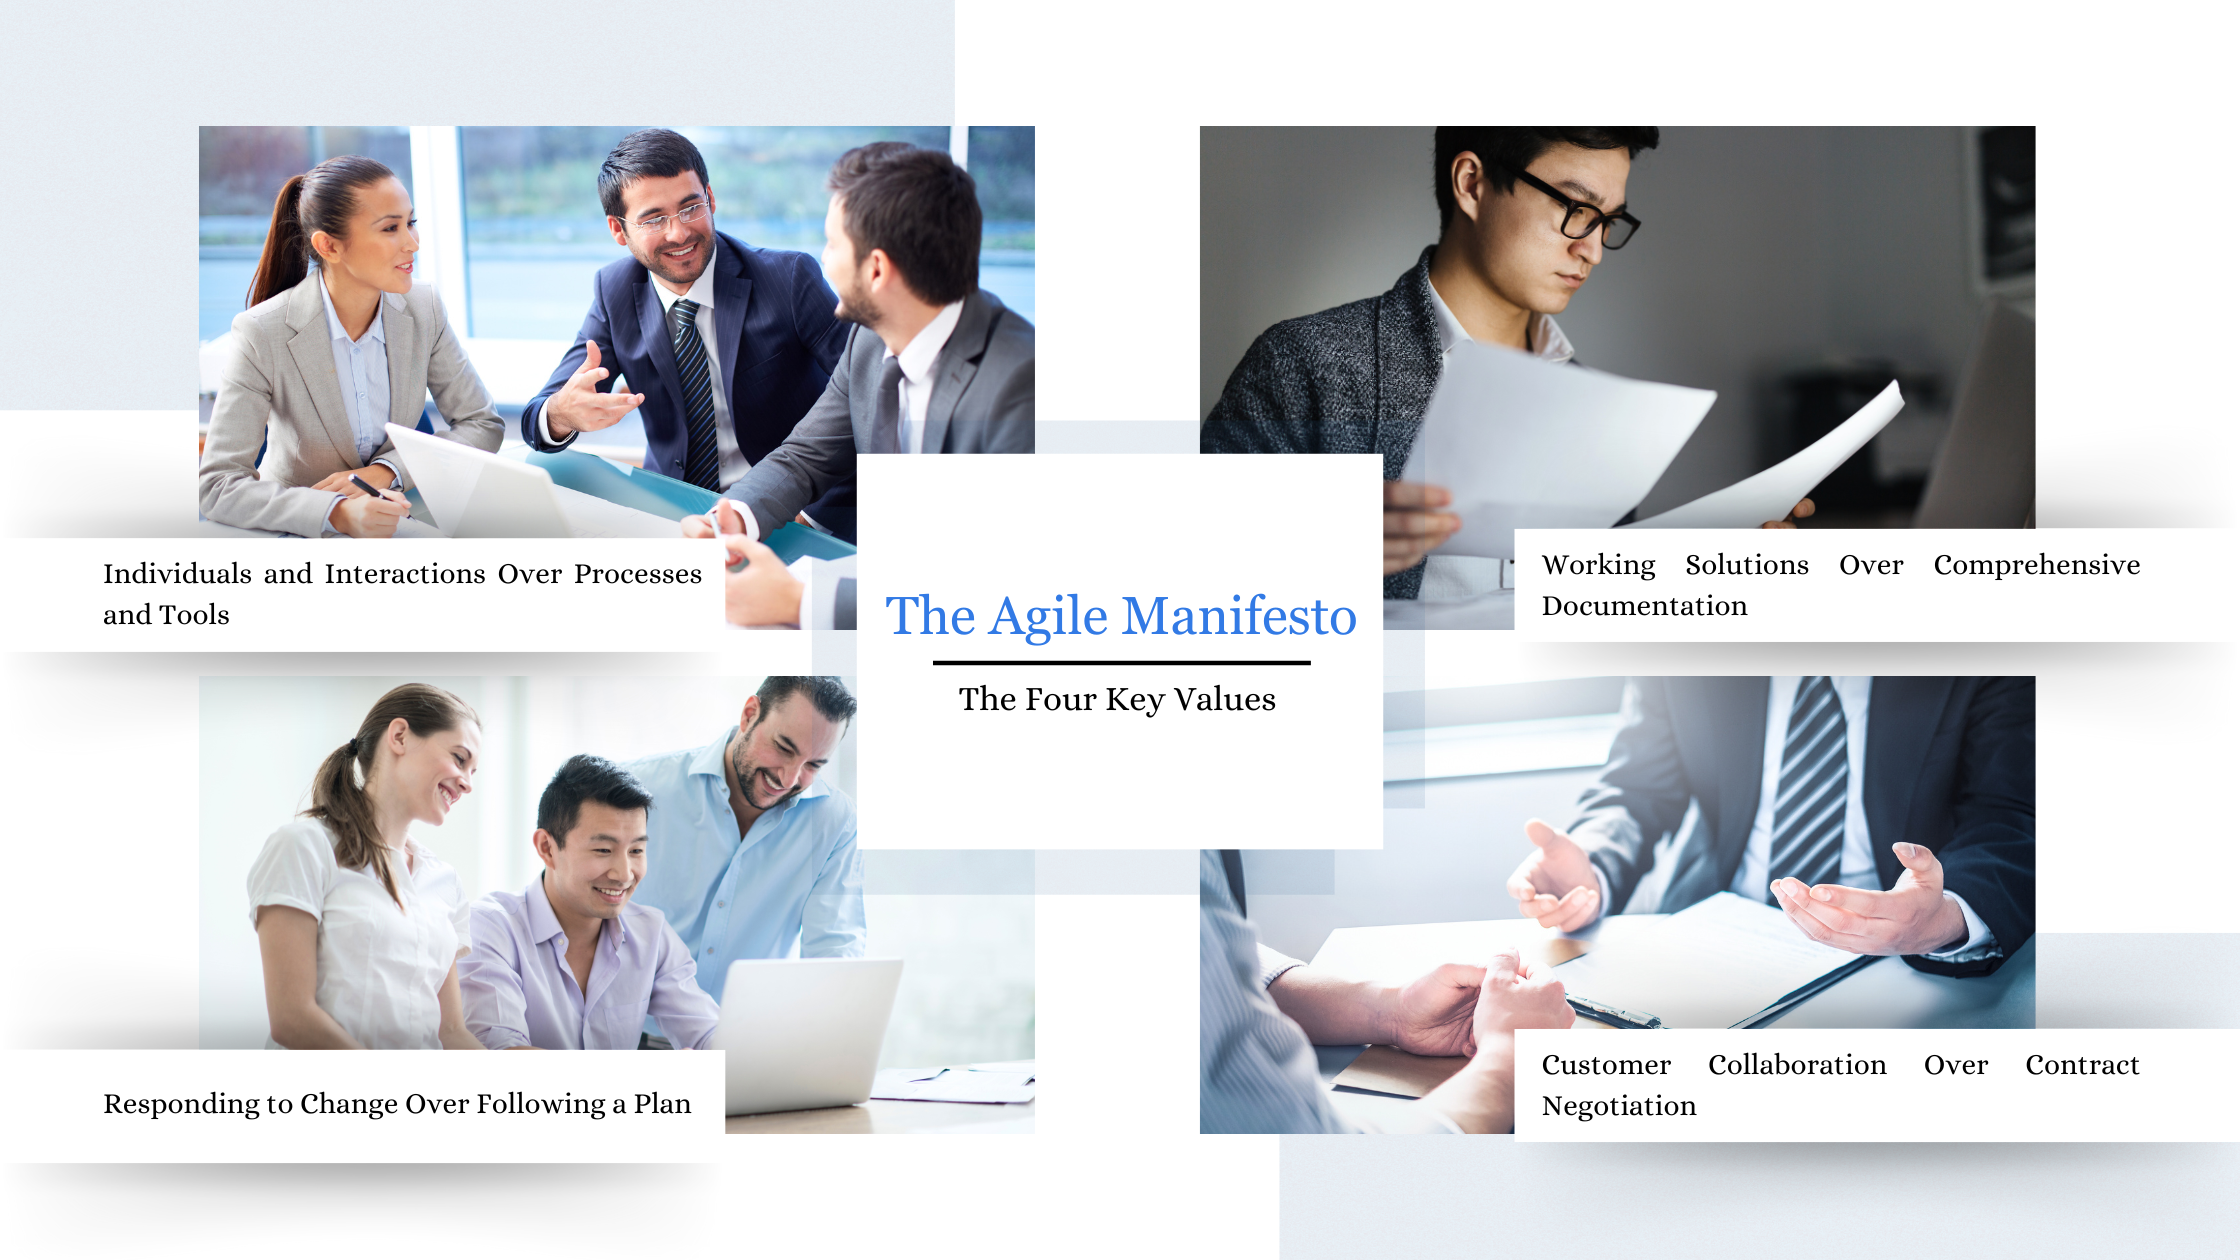 The Agile Manifesto : The four key values